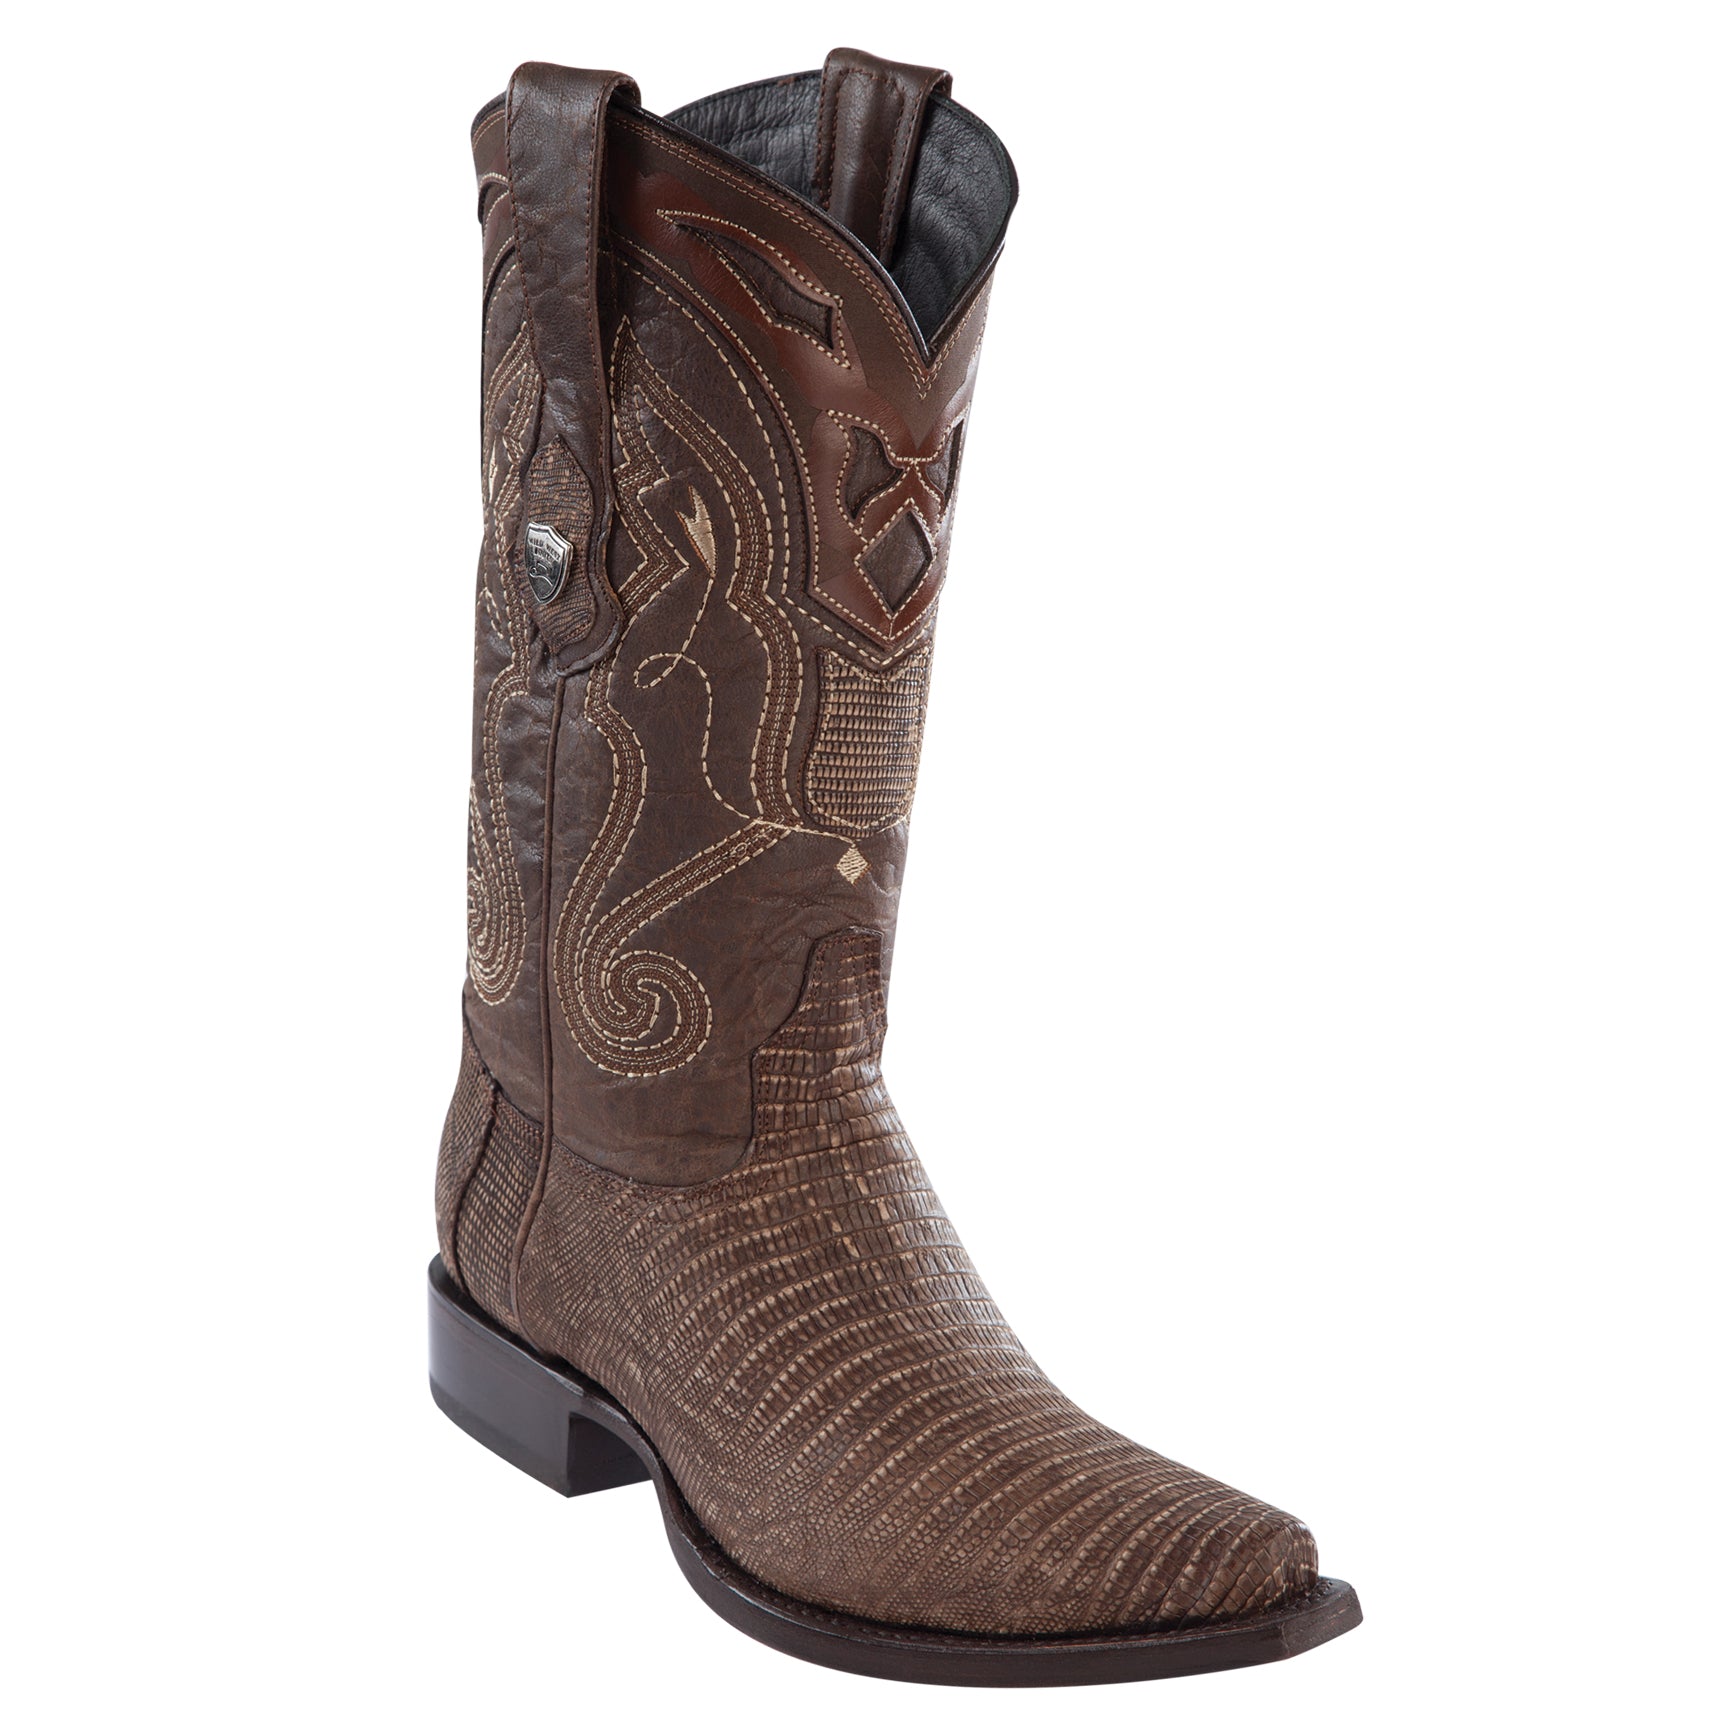 Wild West Men's Lizard Brown Mexican Boots